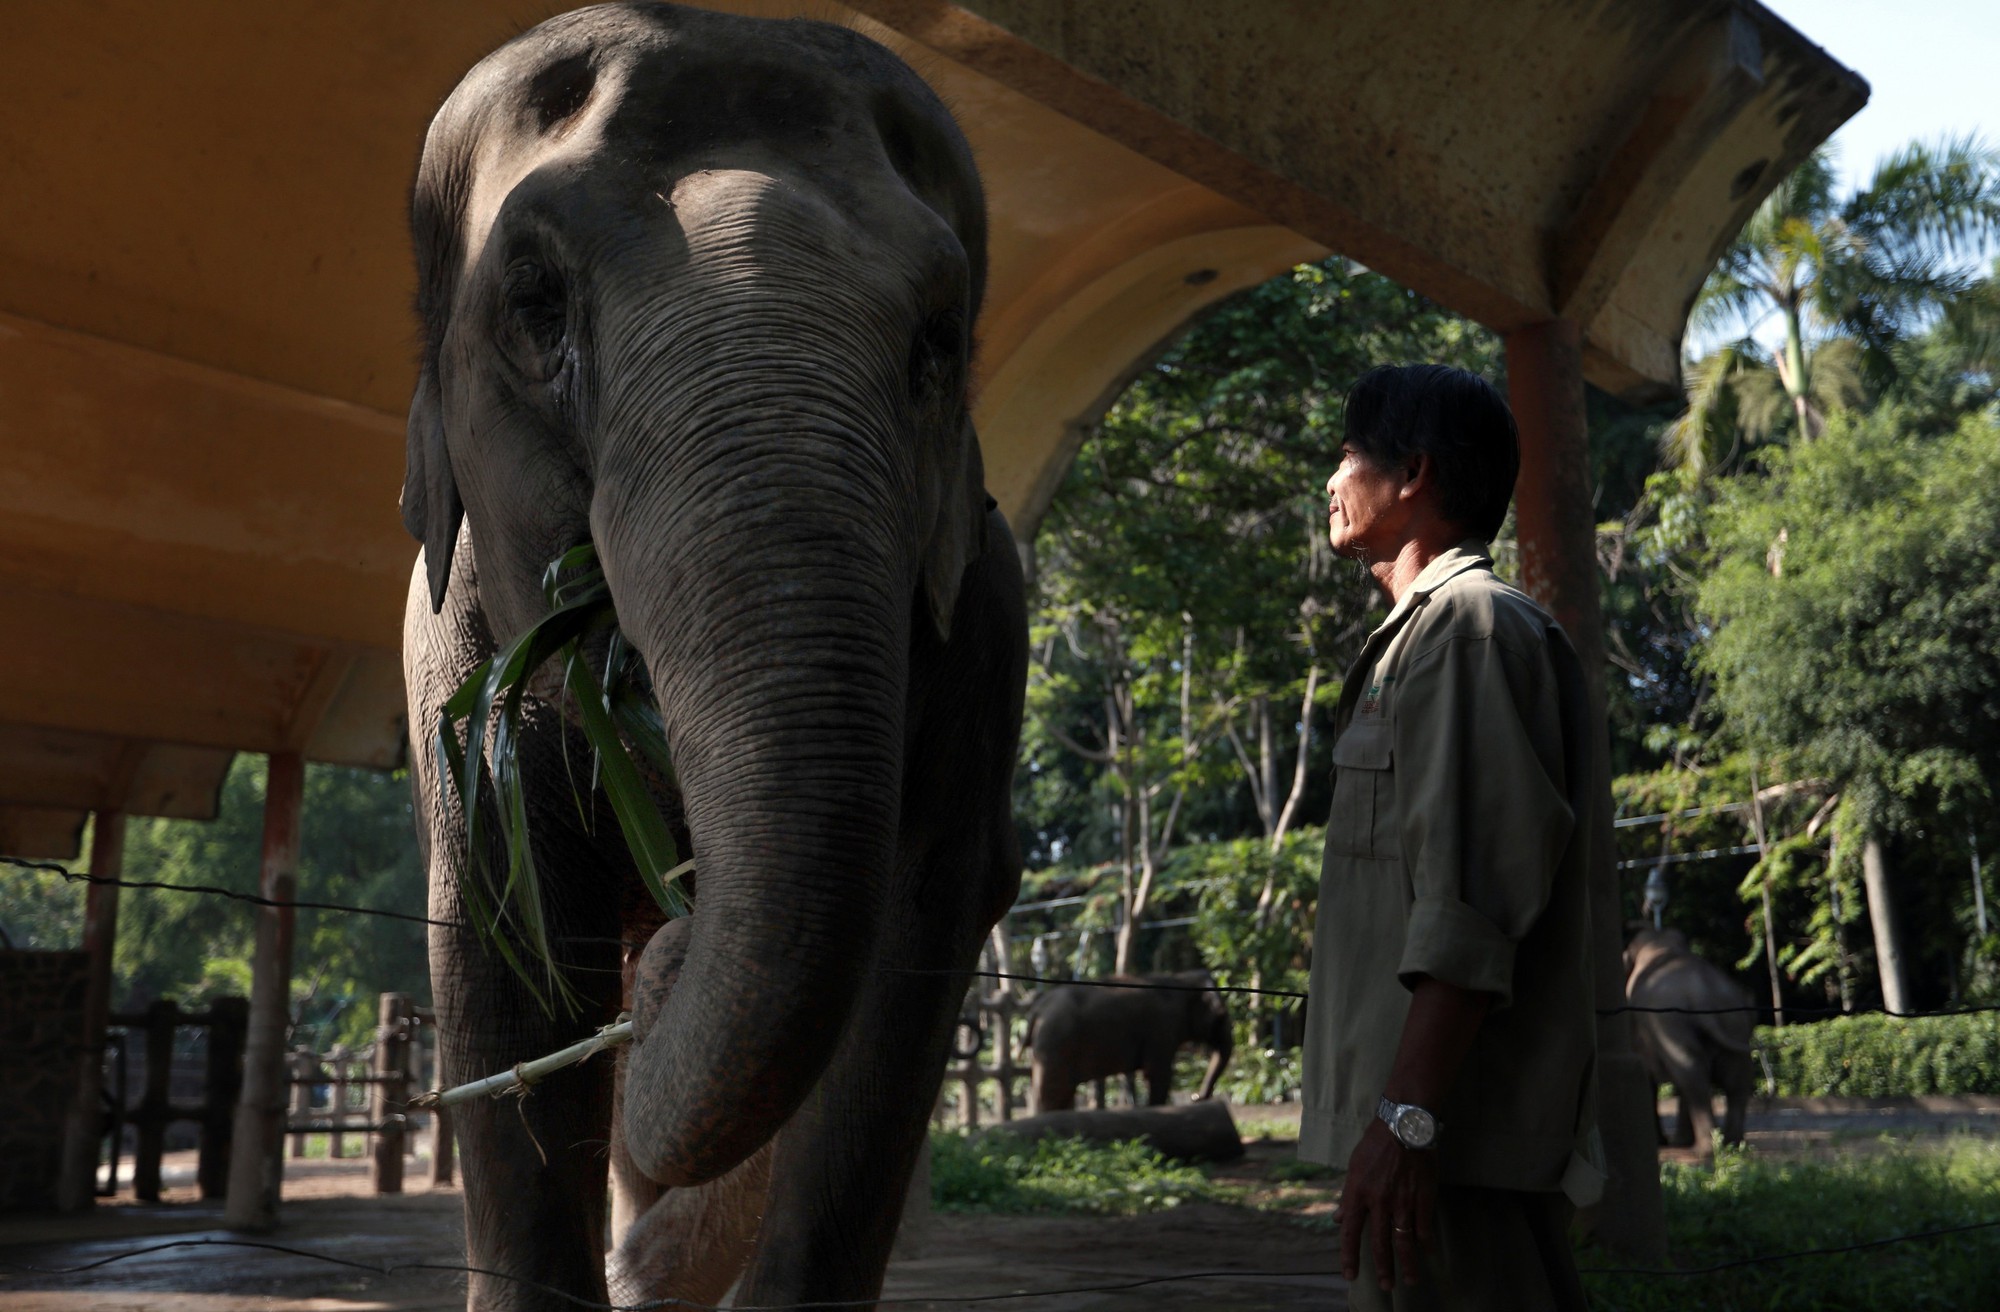 Đàn voi Thảo Cầm Viên Sài Gòn được đặt tên, chăm sóc theo quy tắc đặc biệt - Ảnh 2.